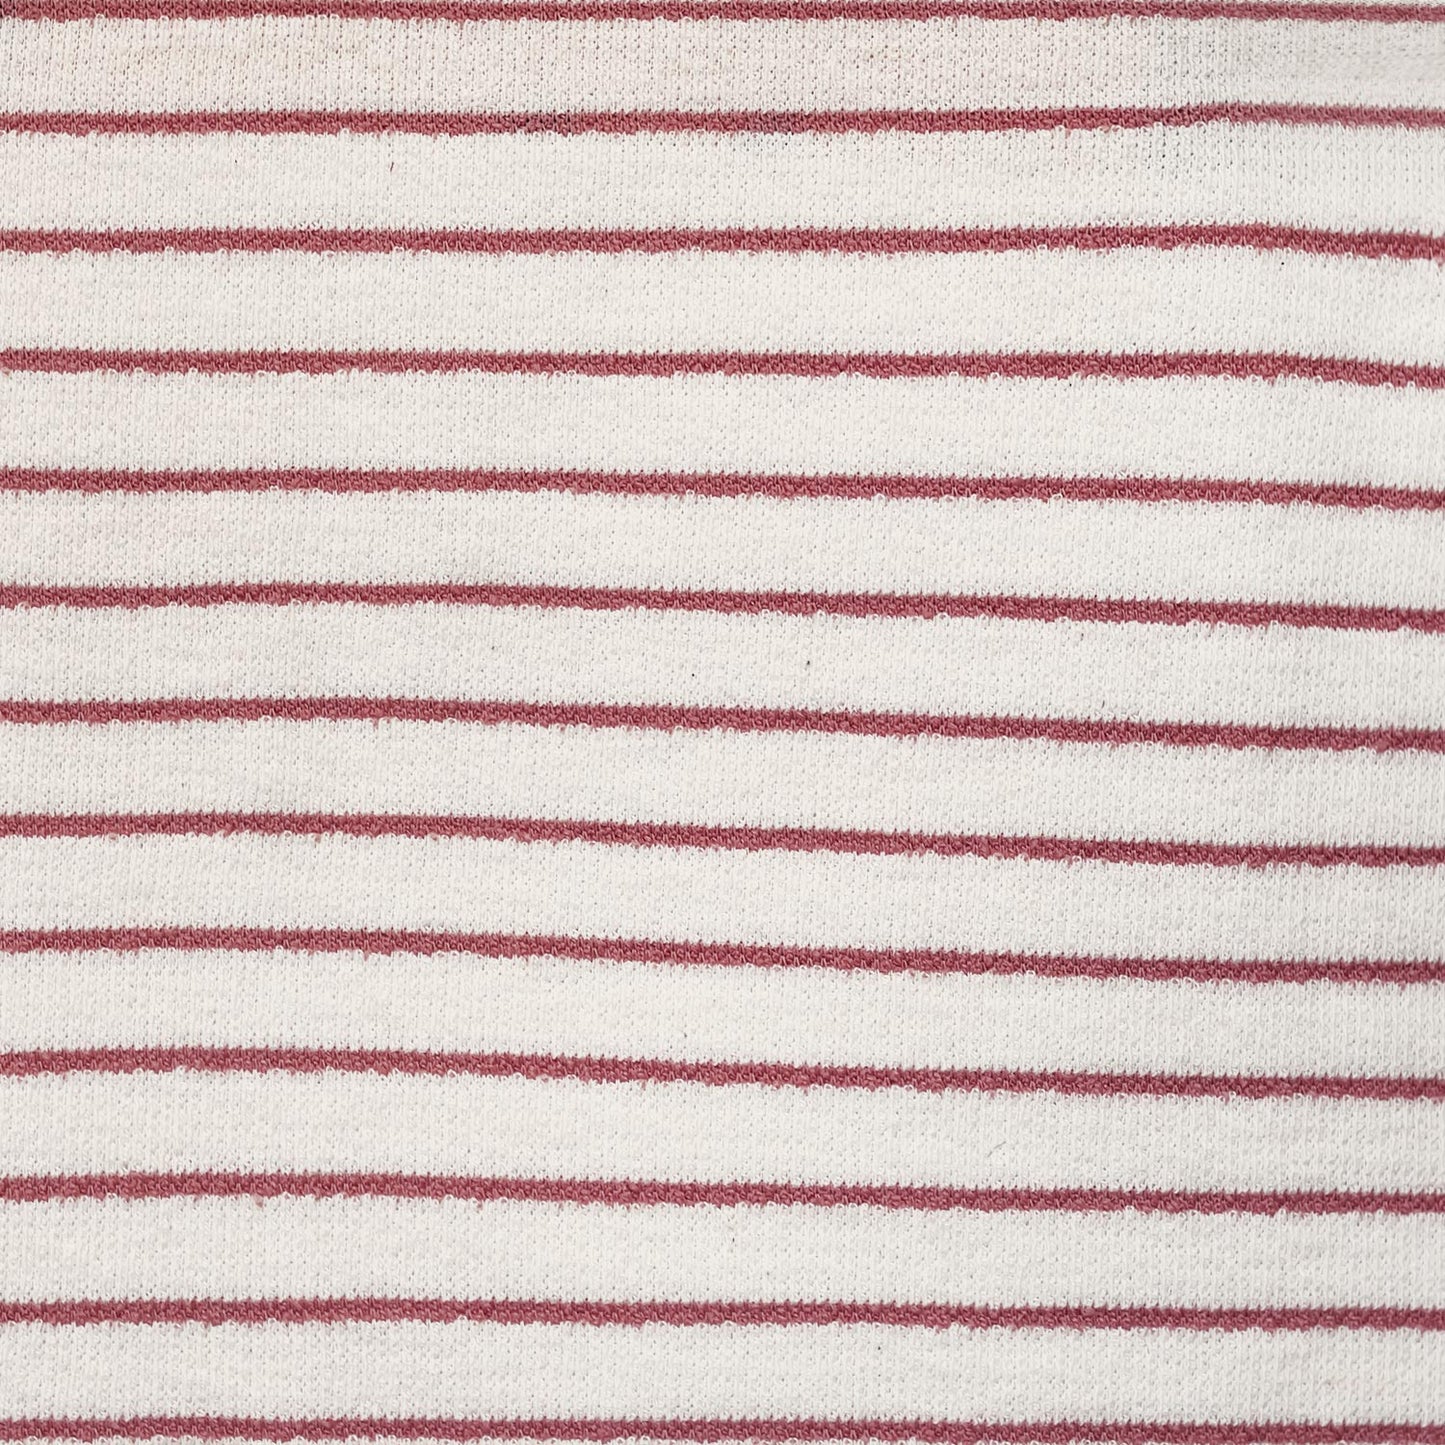 Sweat Towel Stripes ~ Katia